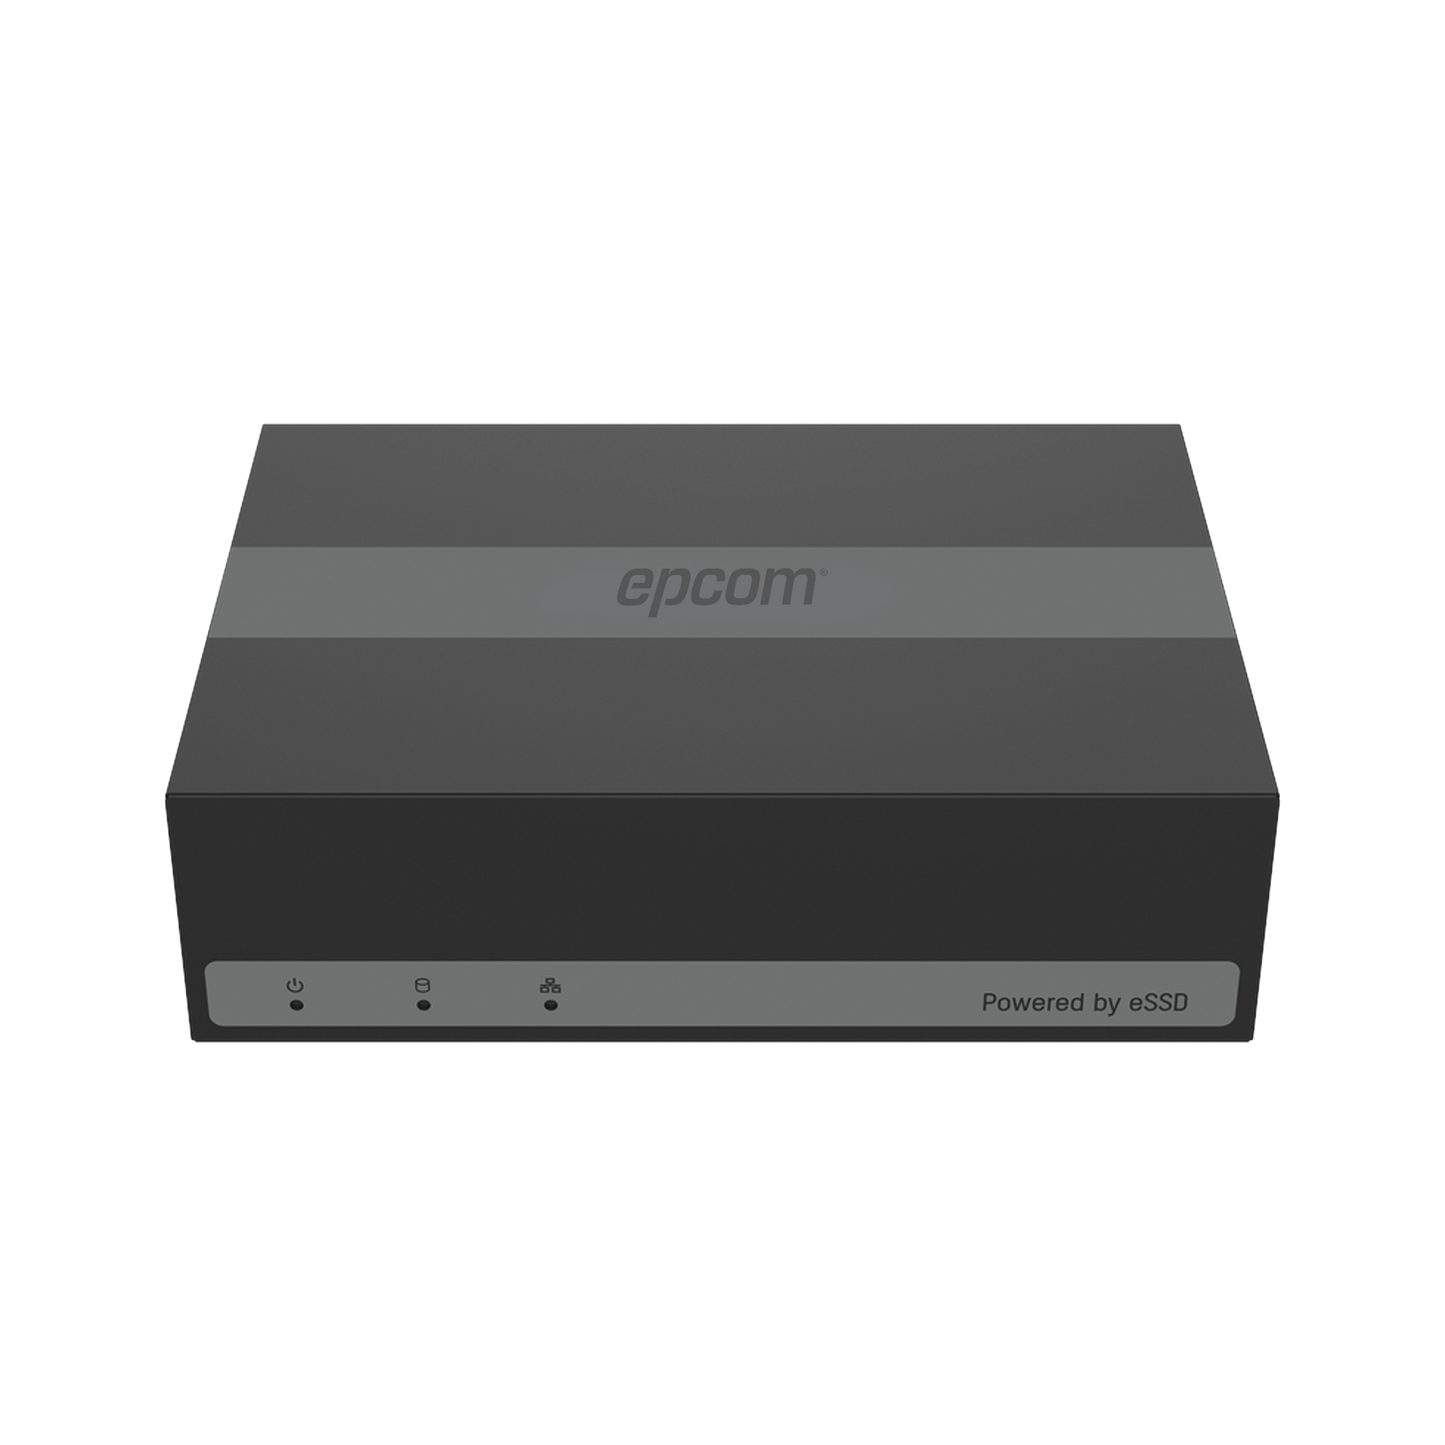 DVR 4 Canales TurboHD + 1 Canal IP / 2 Megapixel (1080p) Lite / Acusense Lite (Evita Falsas Alarmas) / Unidad de Estado Solido Incluido (eSSD) de 300 GB / H.265+ / Diseño Ultra Compacto / Extra Silencioso